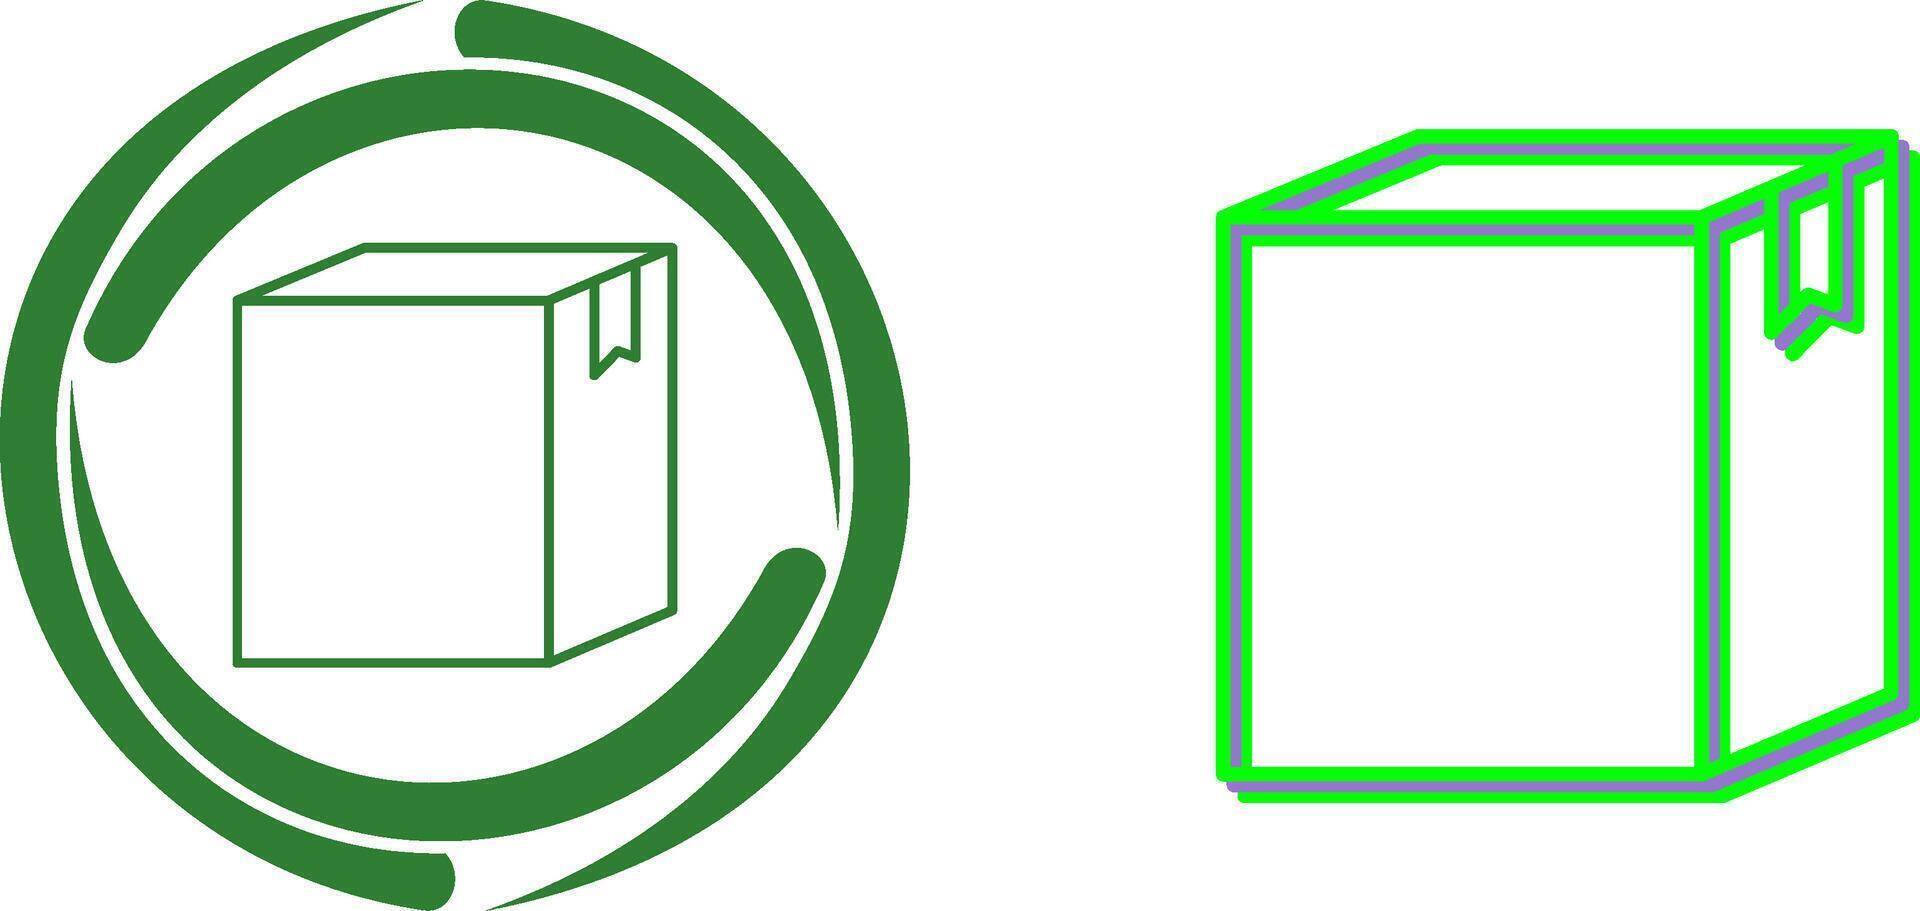 Box Icon Design vector